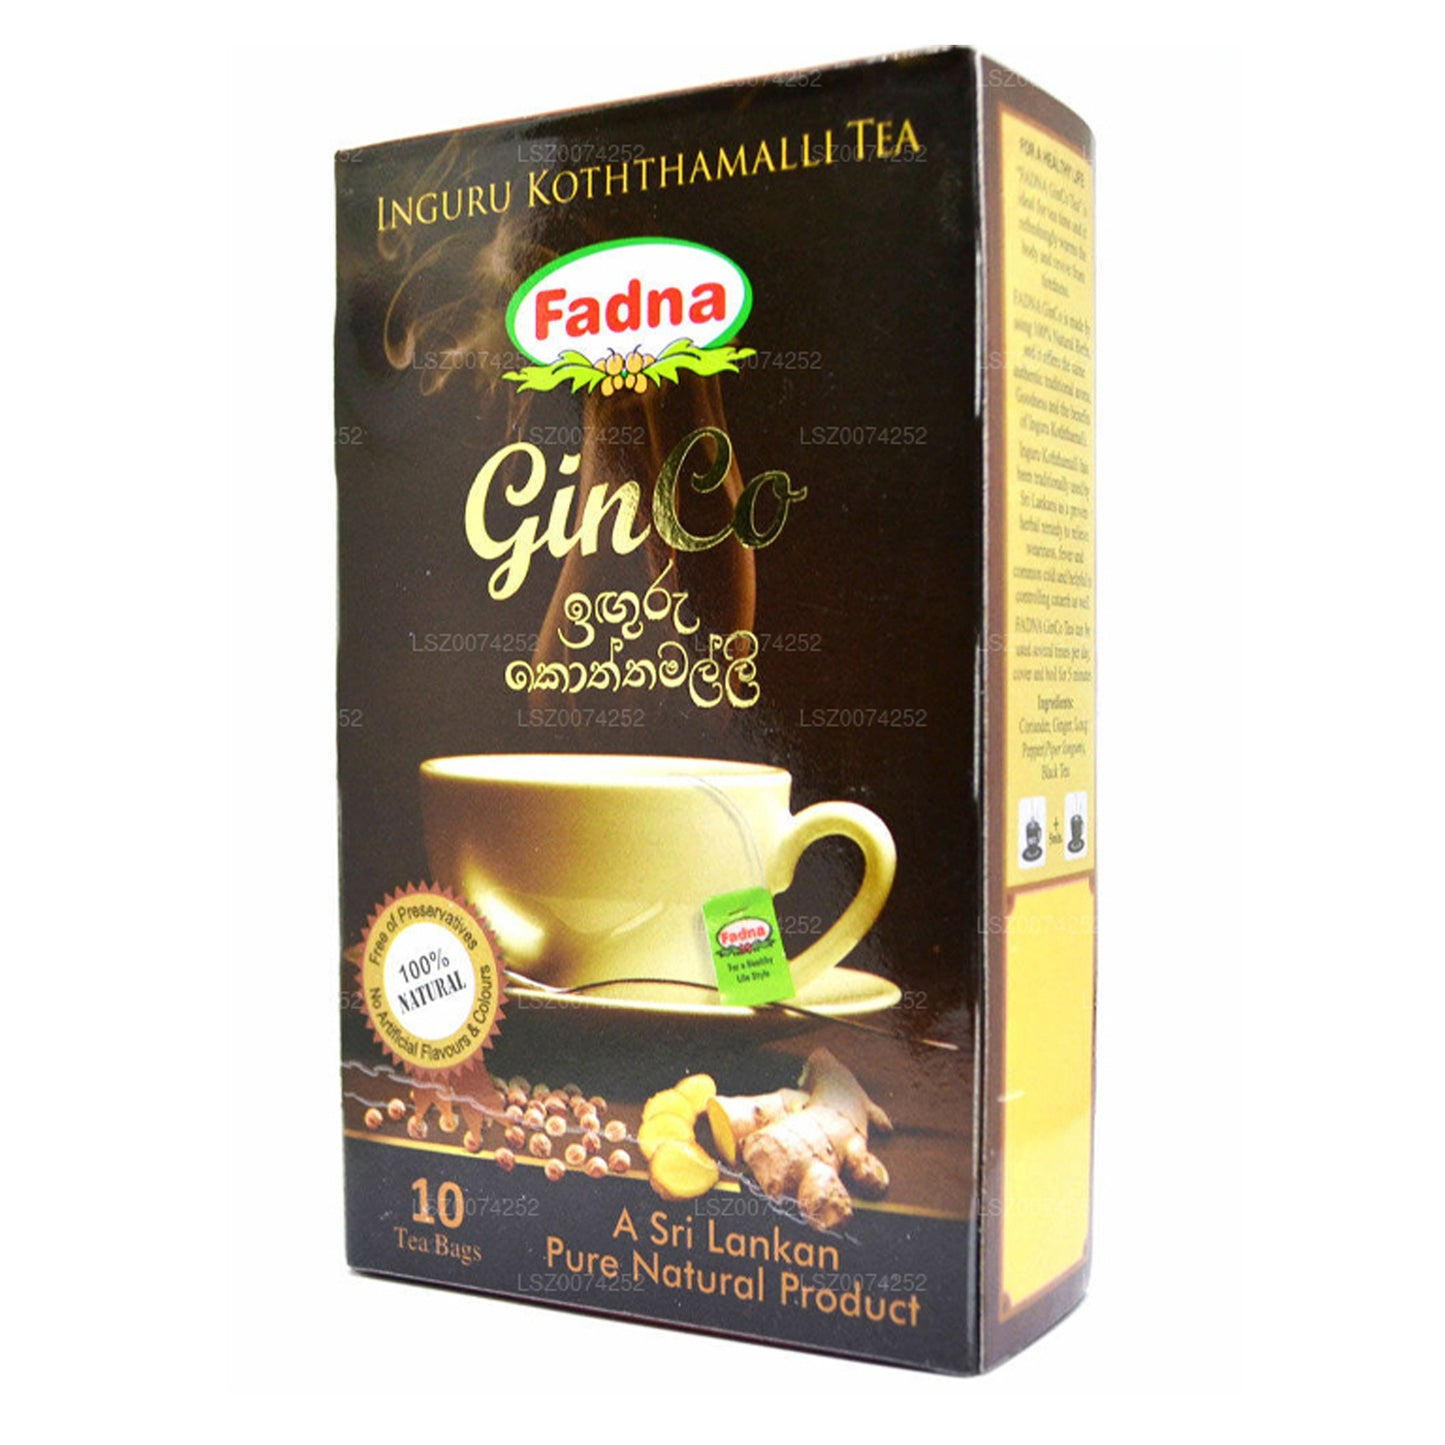 Fadna Herbata o smaku imbiru i kolendry (20g) 10 torebek